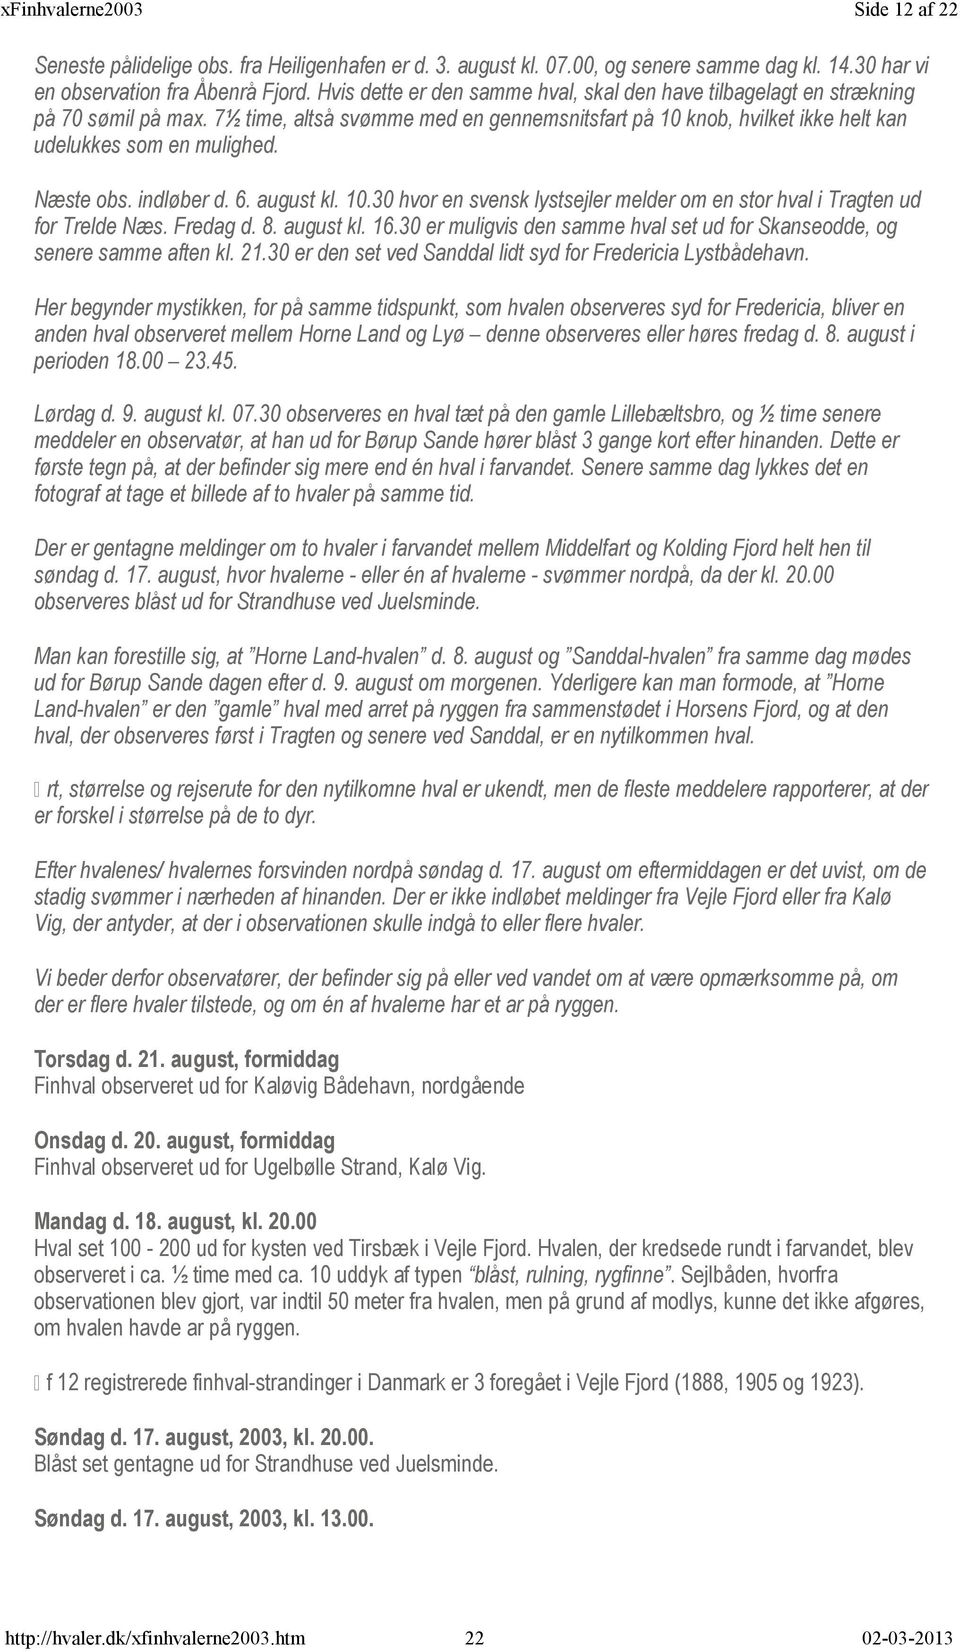 Næste obs. indløber d. 6. august kl. 10.30 hvor en svensk lystsejler melder om en stor hval i Tragten ud for Trelde Næs. Fredag d. 8. august kl. 16.